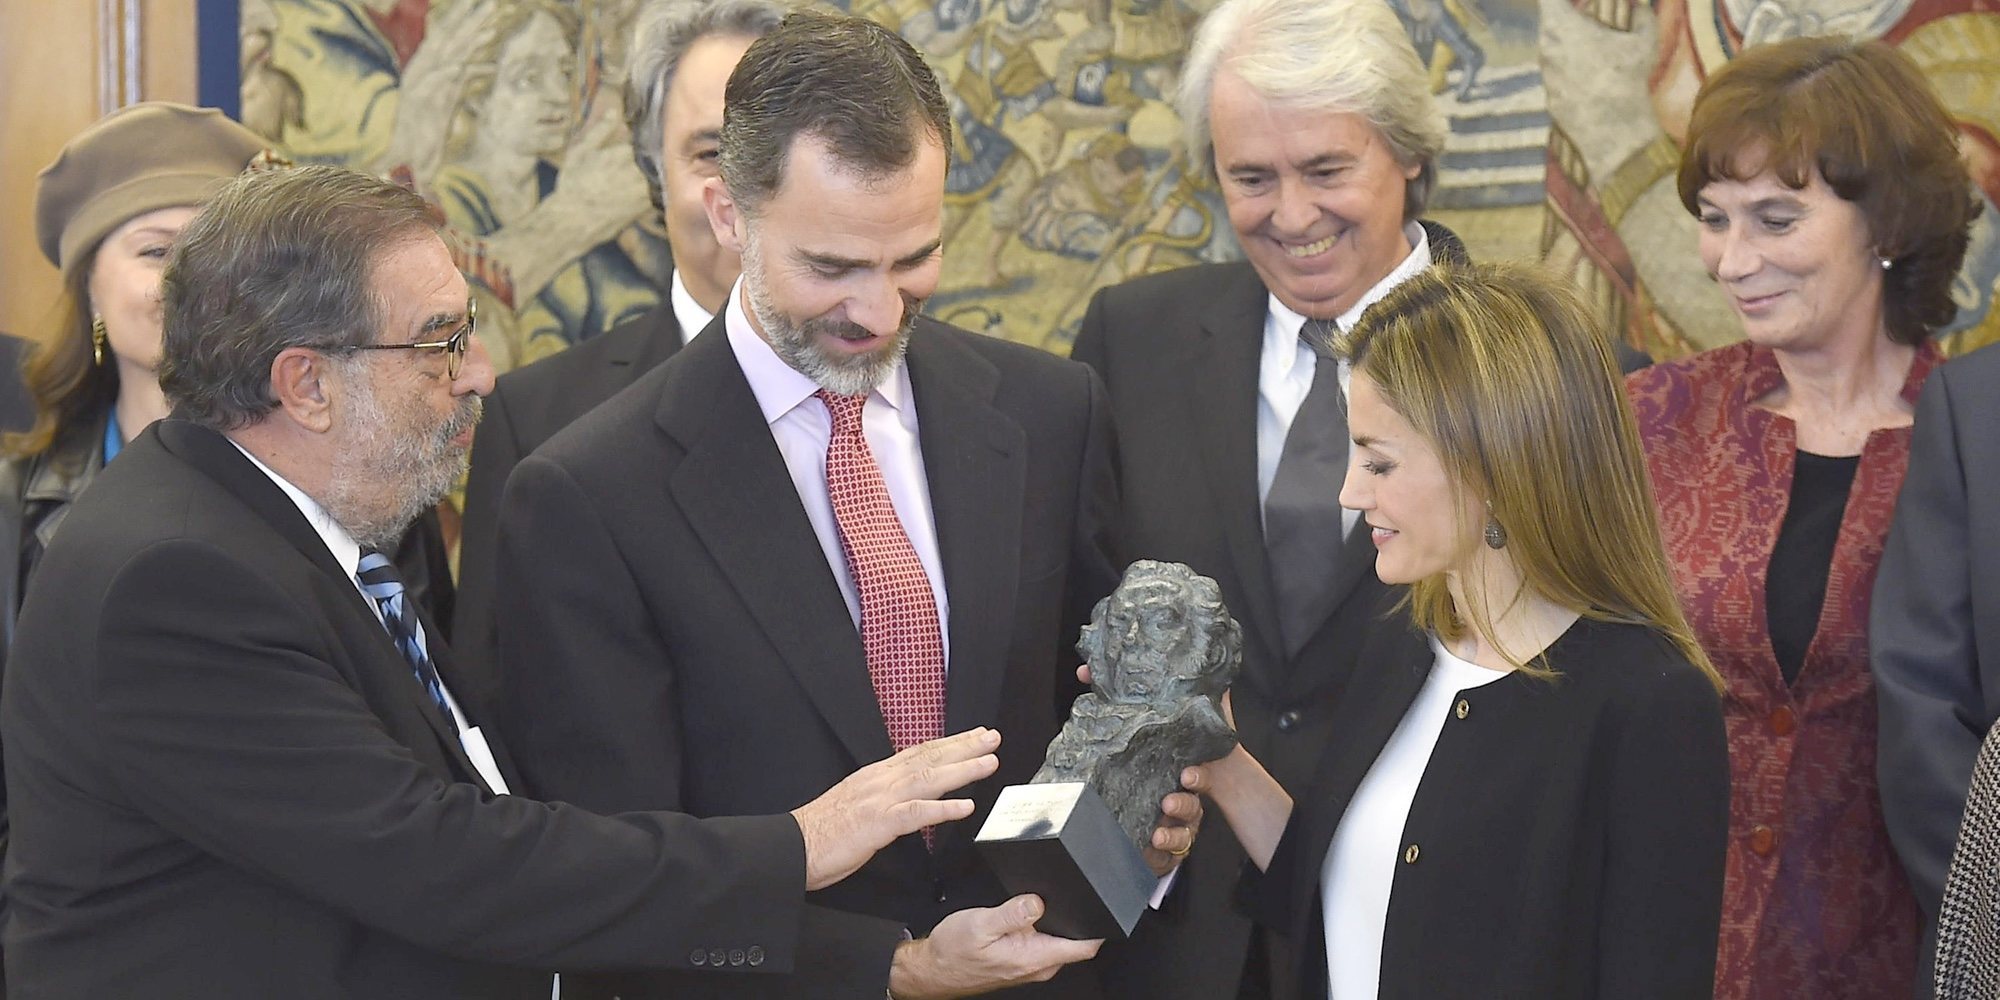 Paula Echevarría, los Javis, Javier Bardem, Pedro Sánchez y los Reyes Felipe y Letizia, los grandes ausentes en los Goya 2019